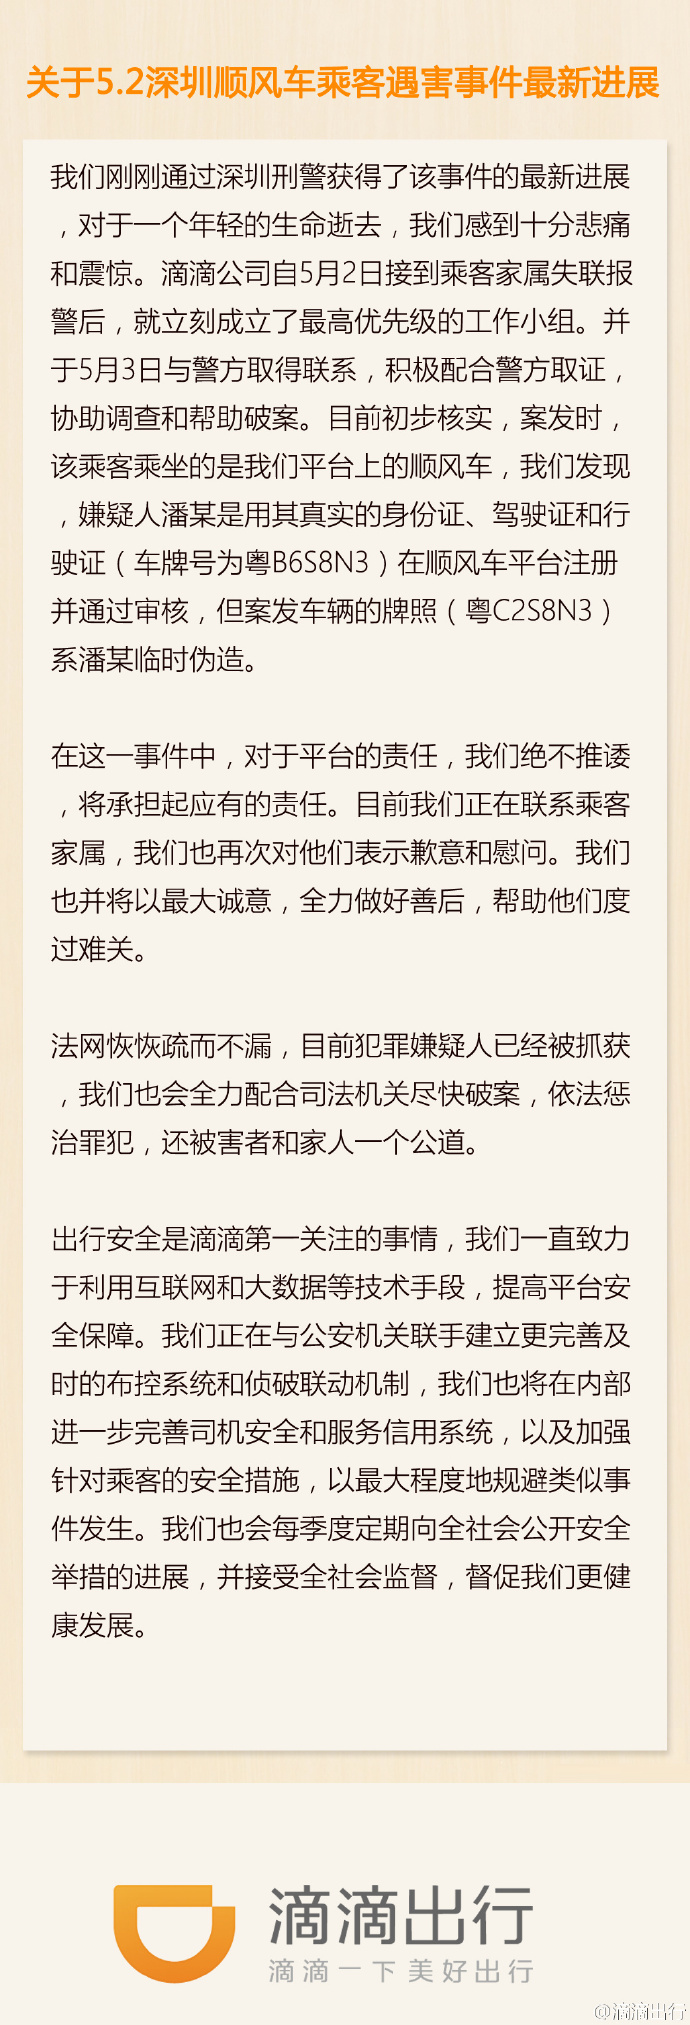 滴滴出行关于5.2深圳顺风车乘客遇害事件最新进展